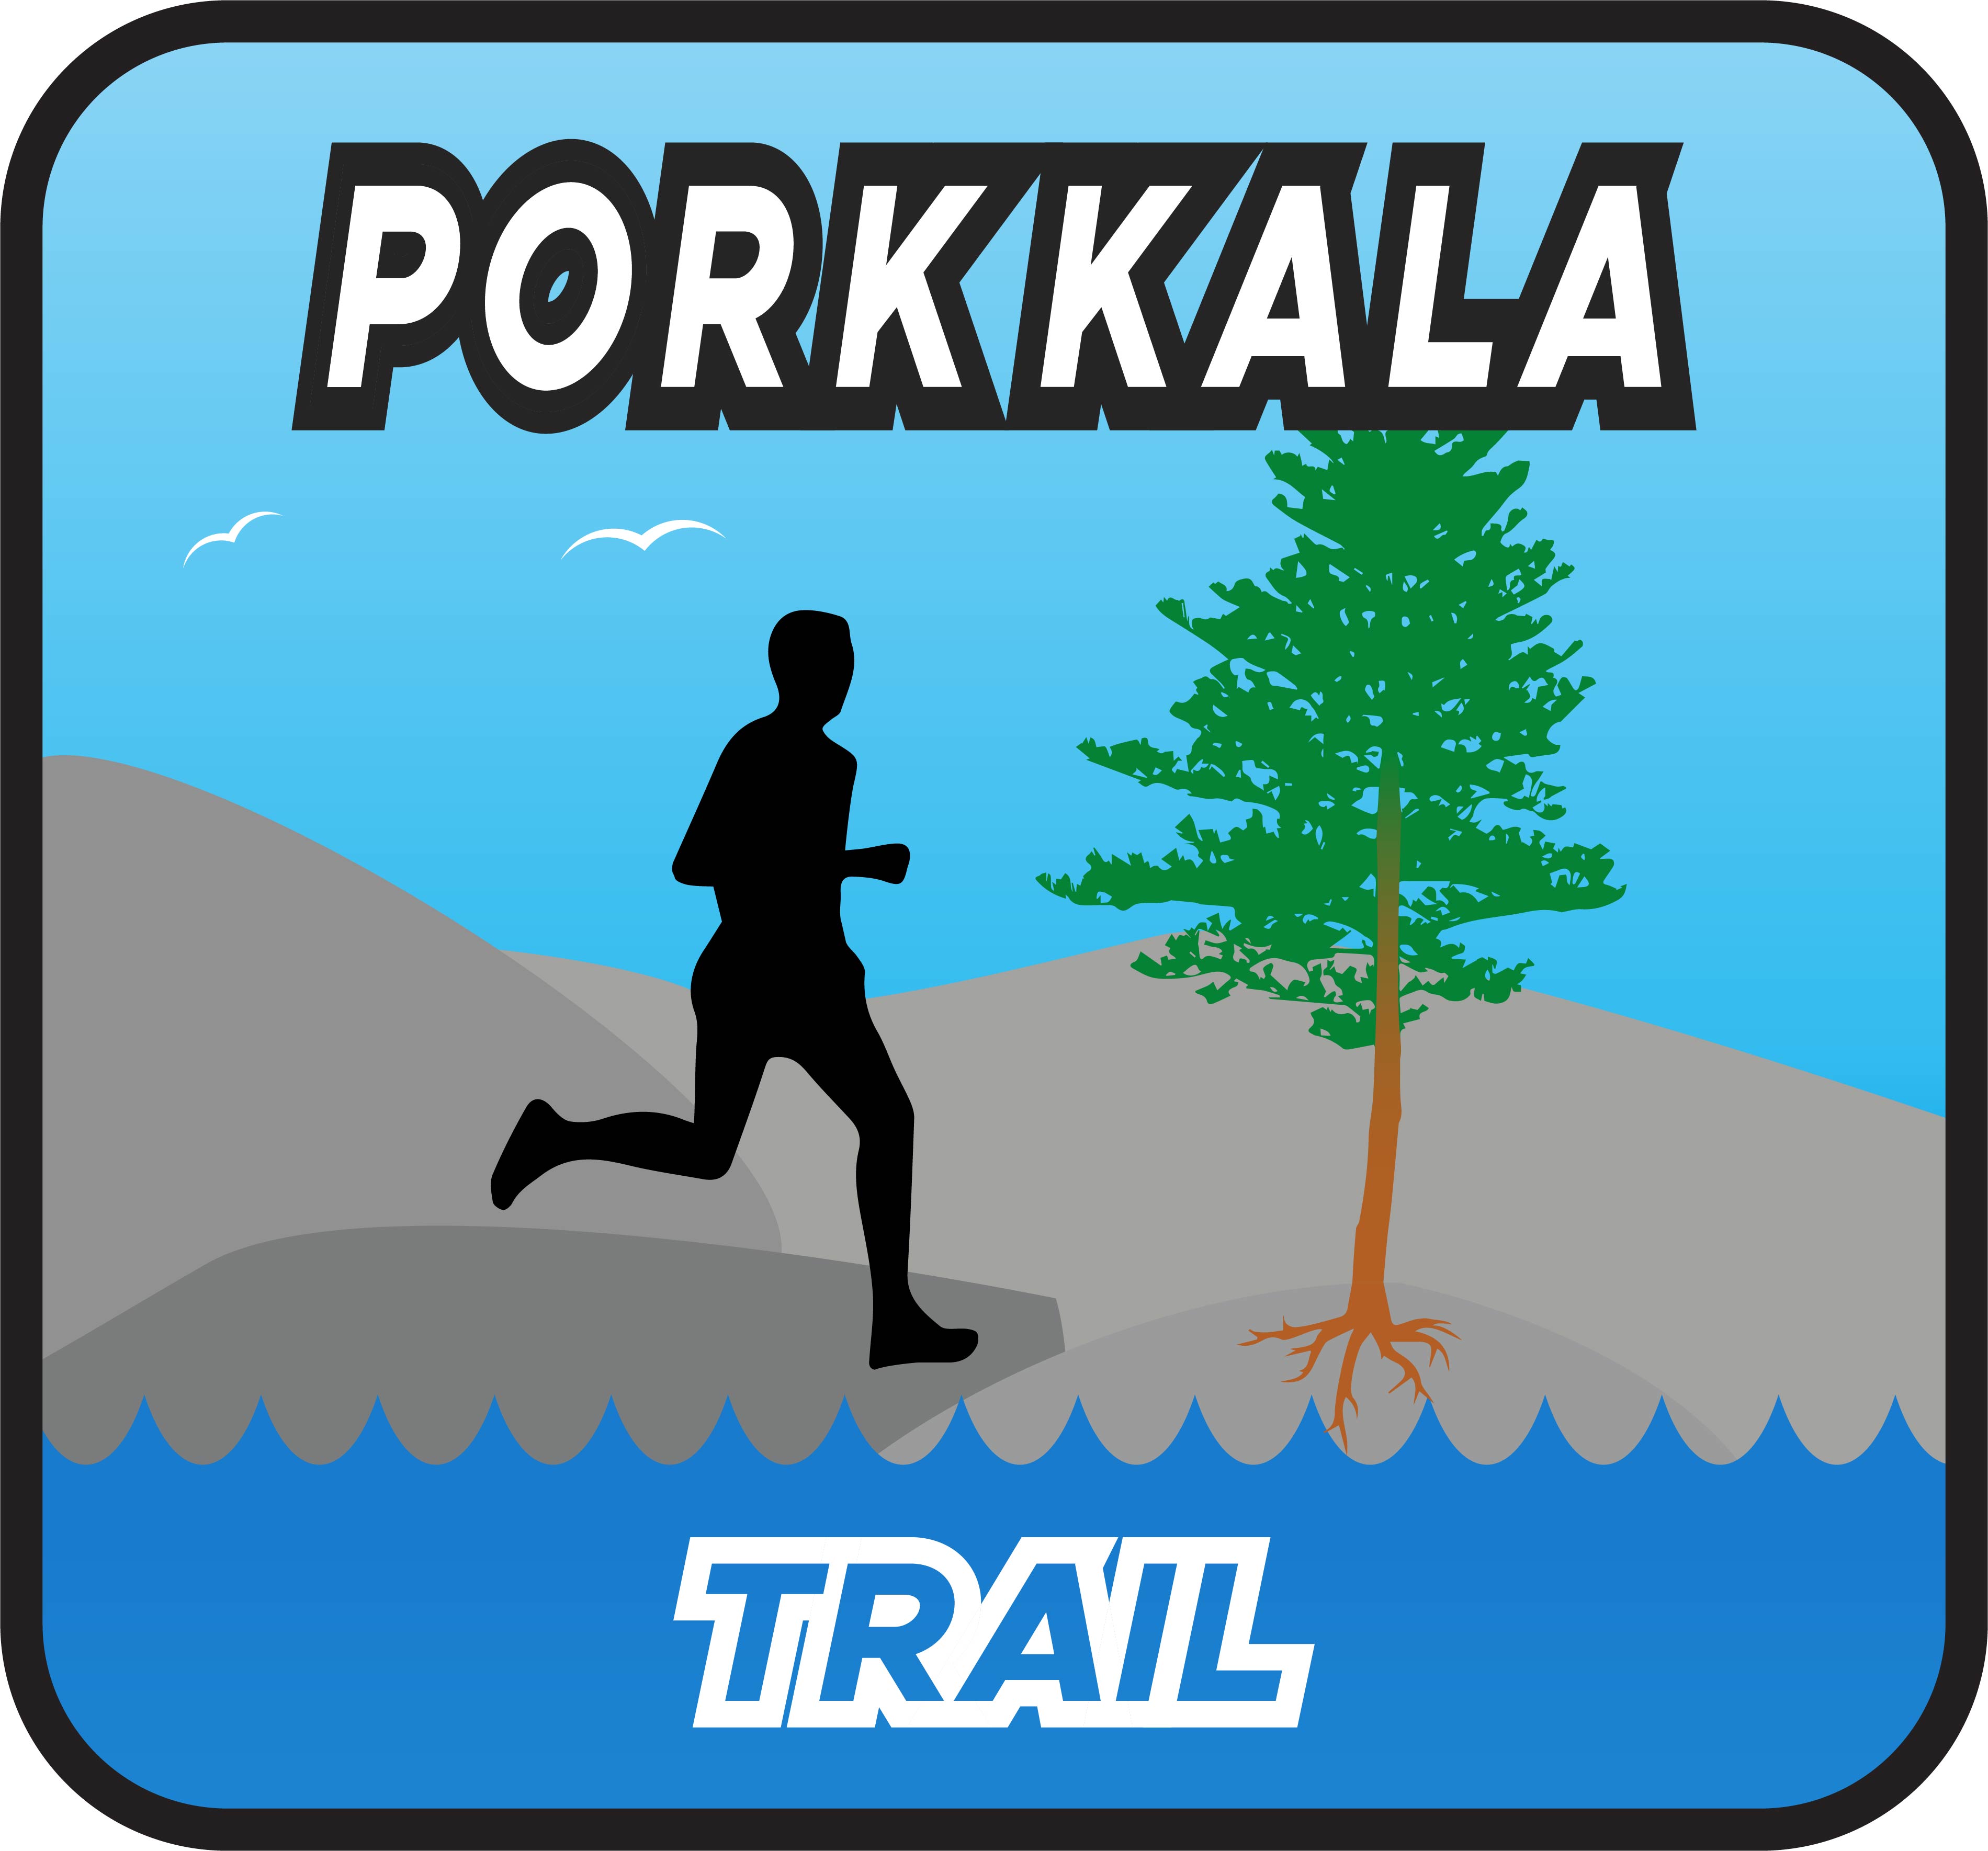 porkka-trail-logo.jpg (409 KB)